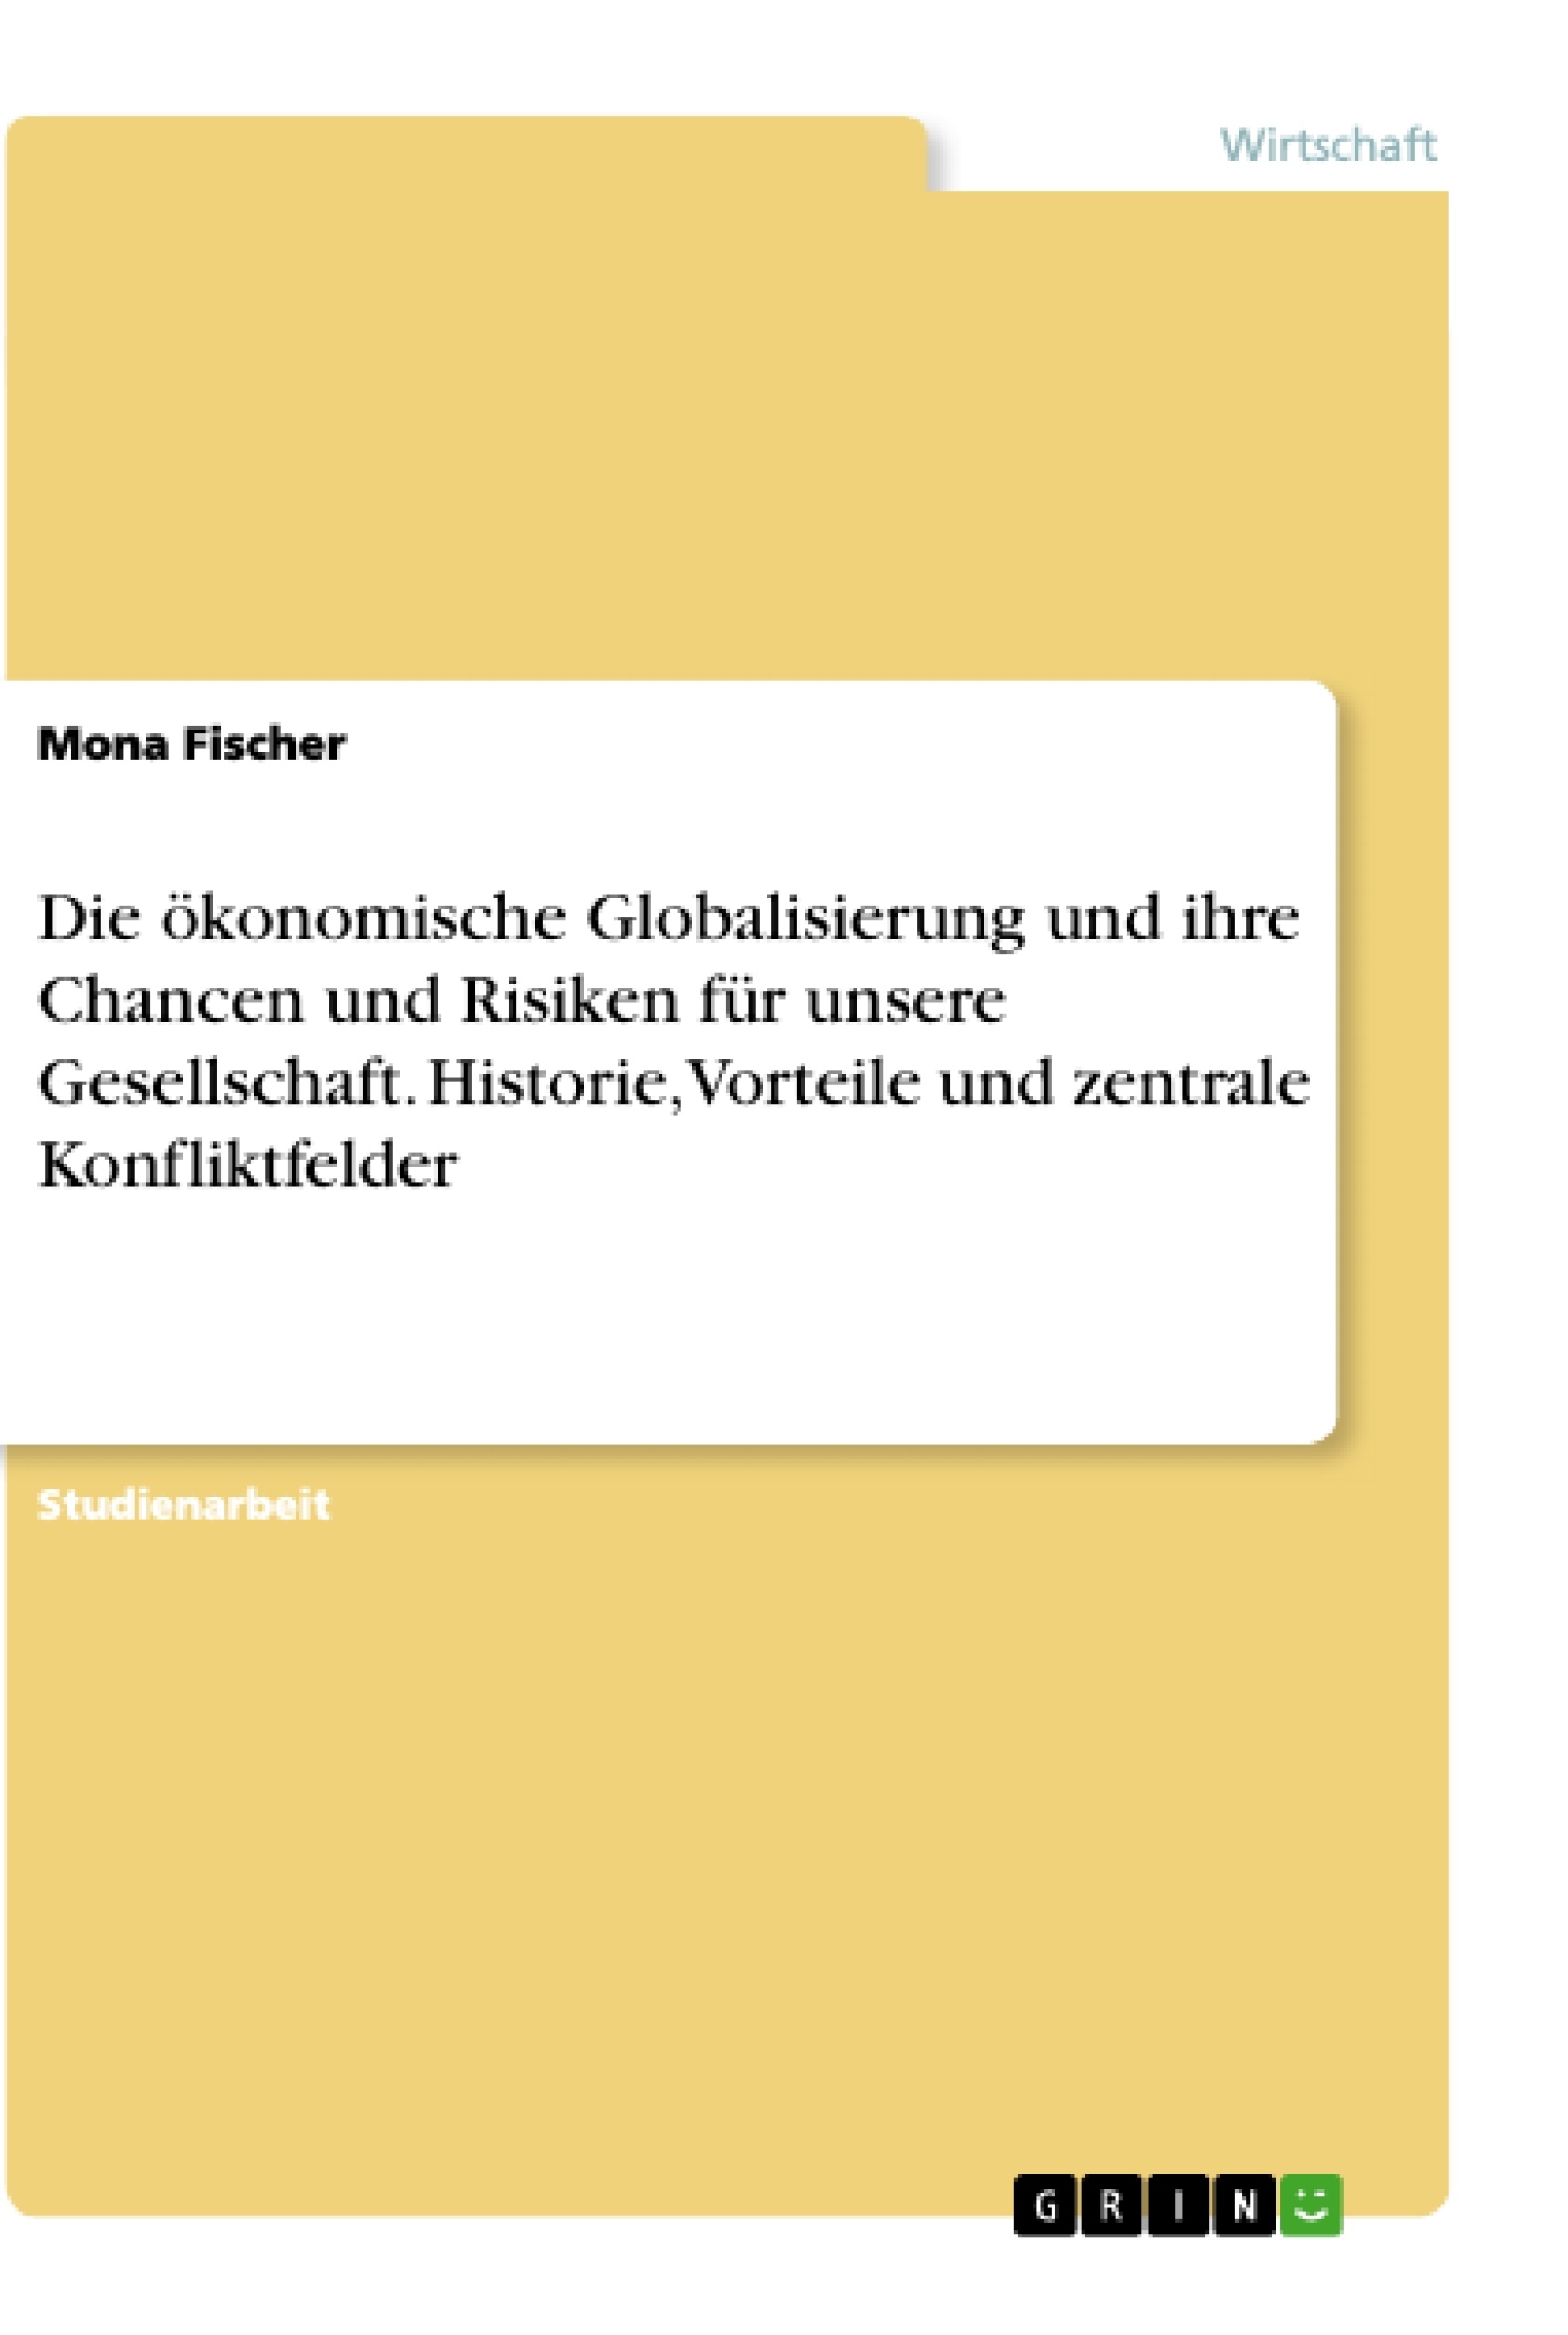 Titre: Die ökonomische Globalisierung und ihre Chancen und Risiken für unsere Gesellschaft. Historie, Vorteile und zentrale Konfliktfelder